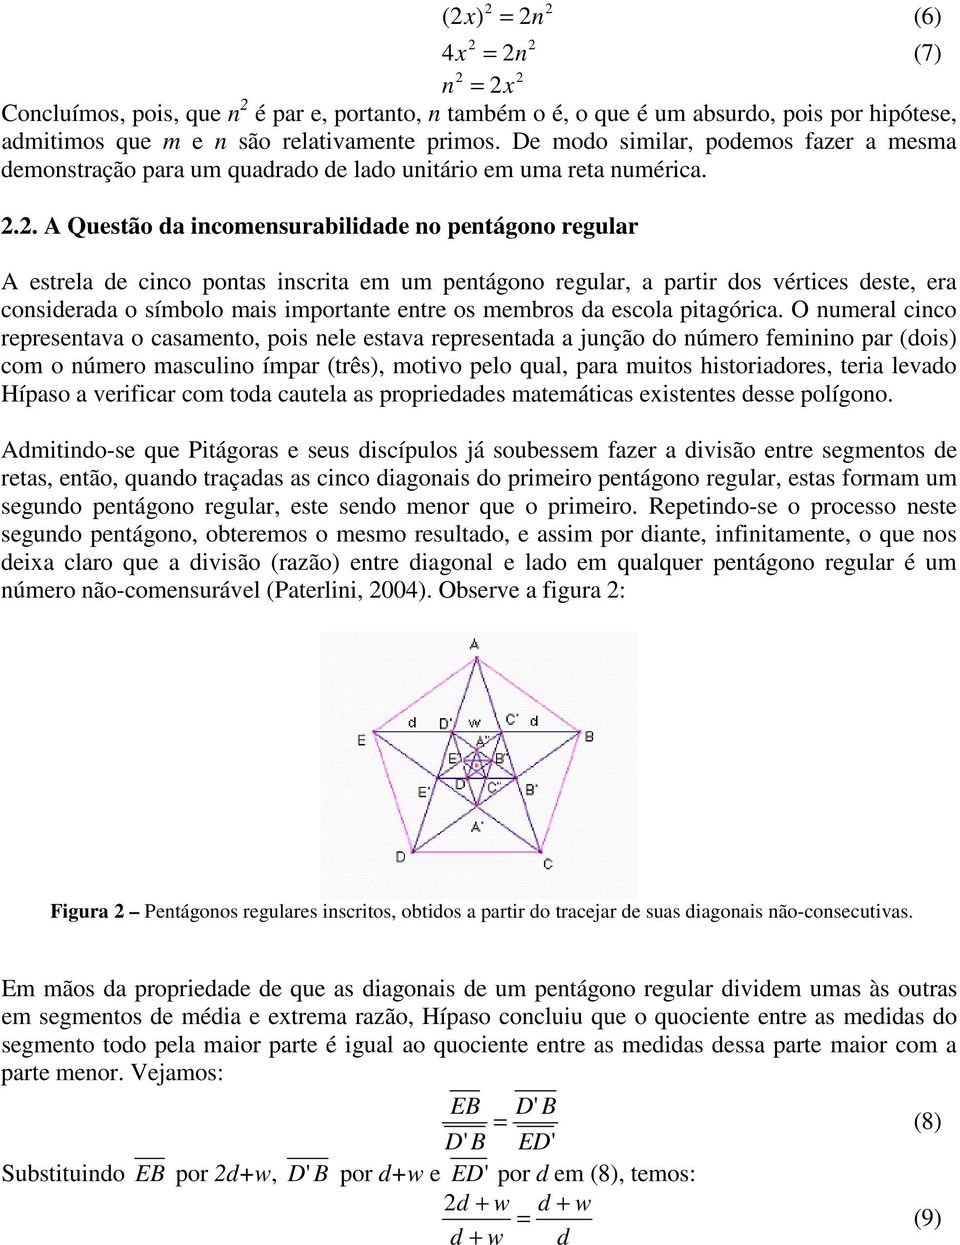 .. A Questão da incomensurabilidade no pentágono regular x = (7) A estrela de cinco pontas inscrita em um pentágono regular, a partir dos vértices deste, era considerada o símbolo mais importante